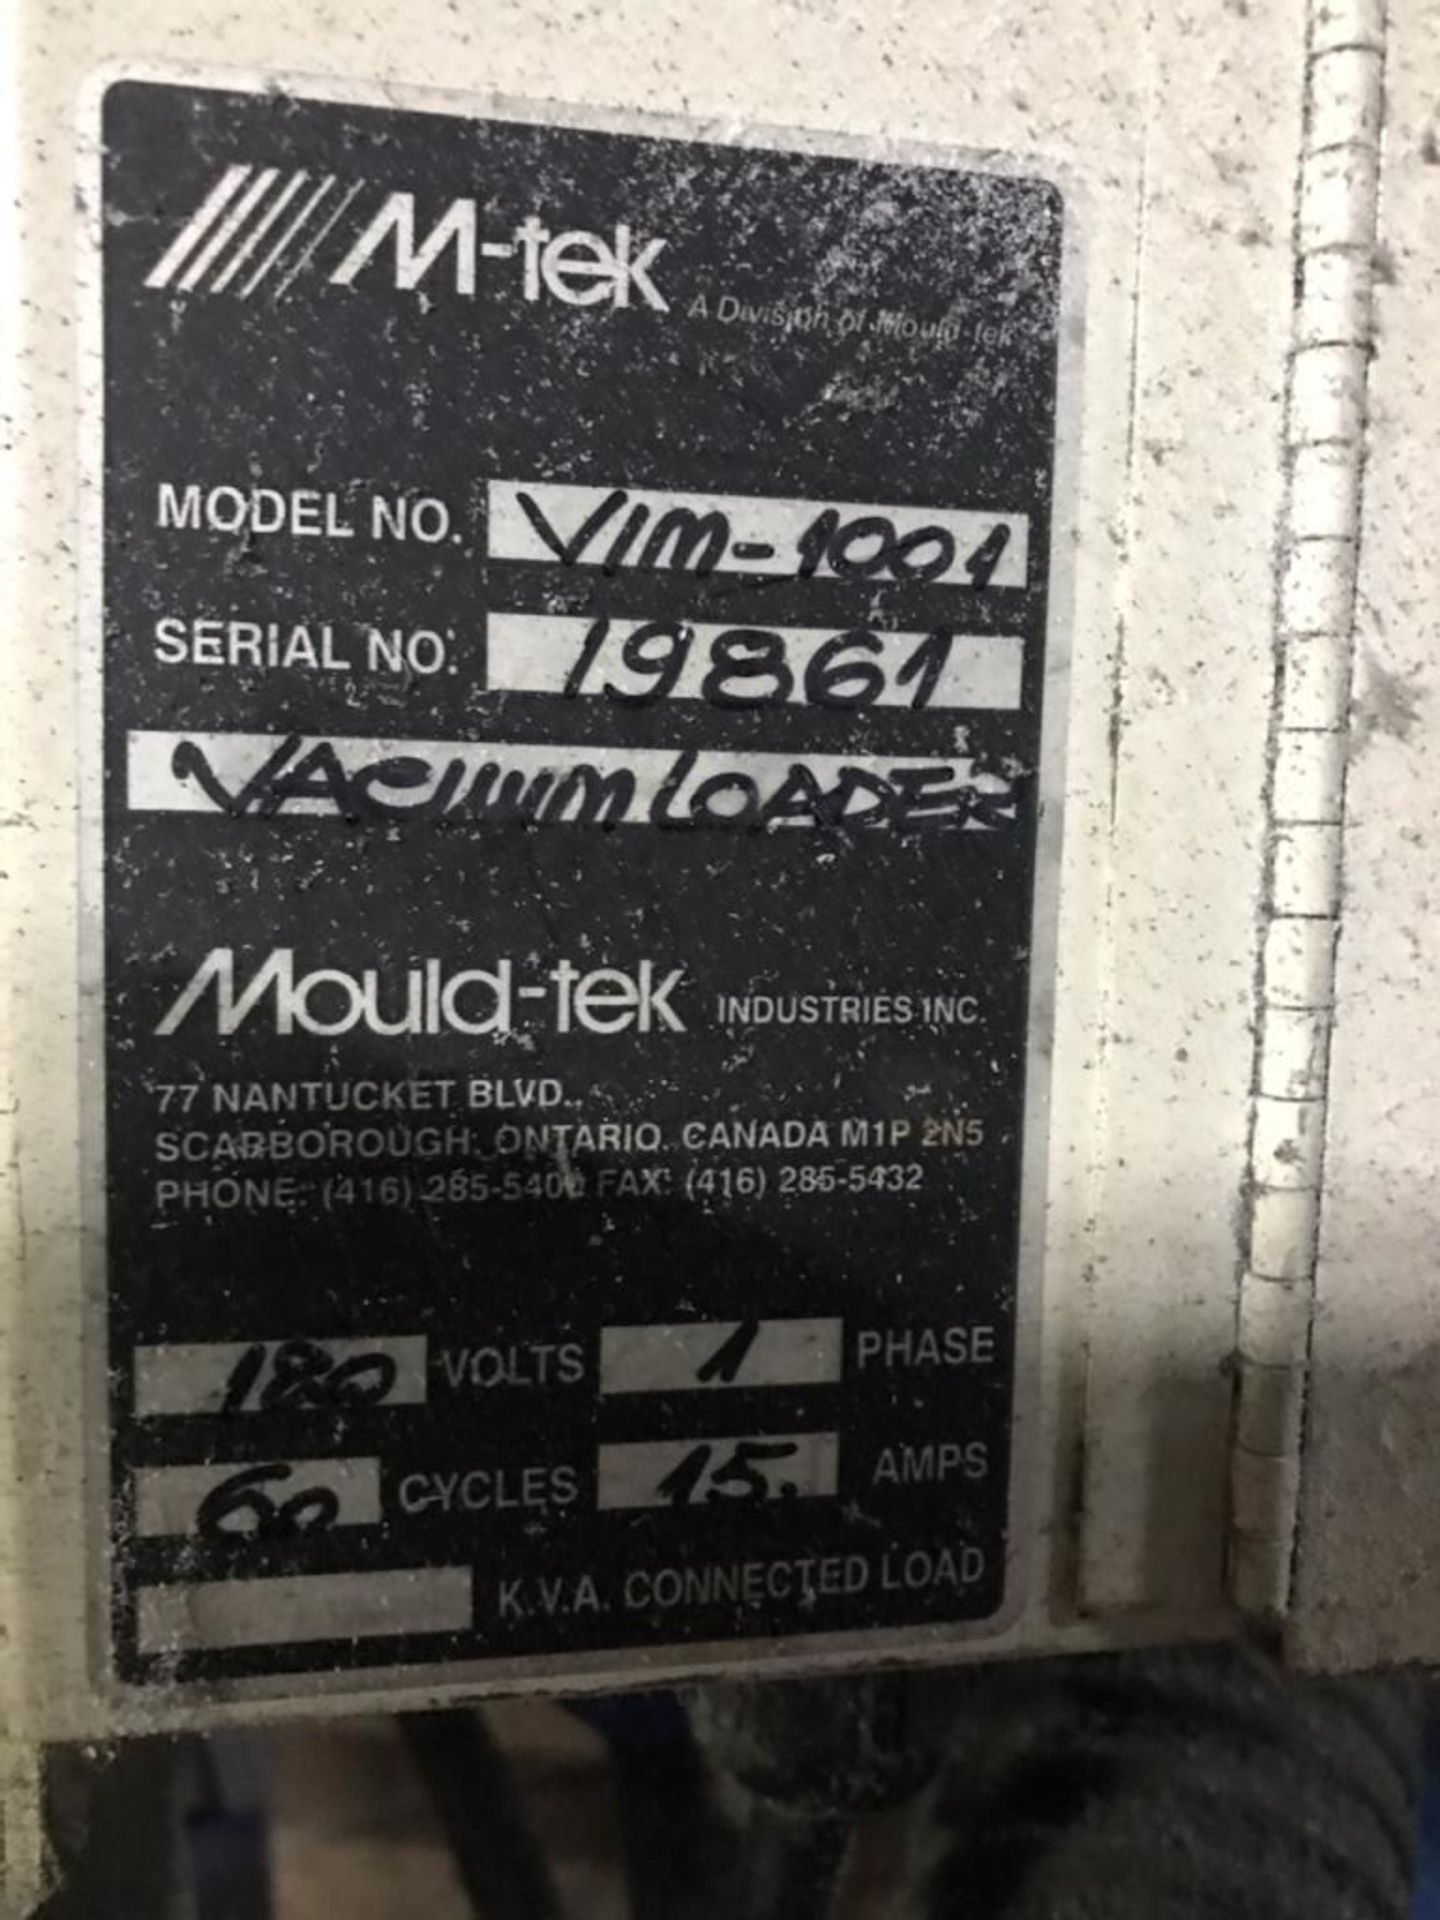 Mould-Tek VIM-1001 Vacuum Loader, s/n 19861 - Image 2 of 2